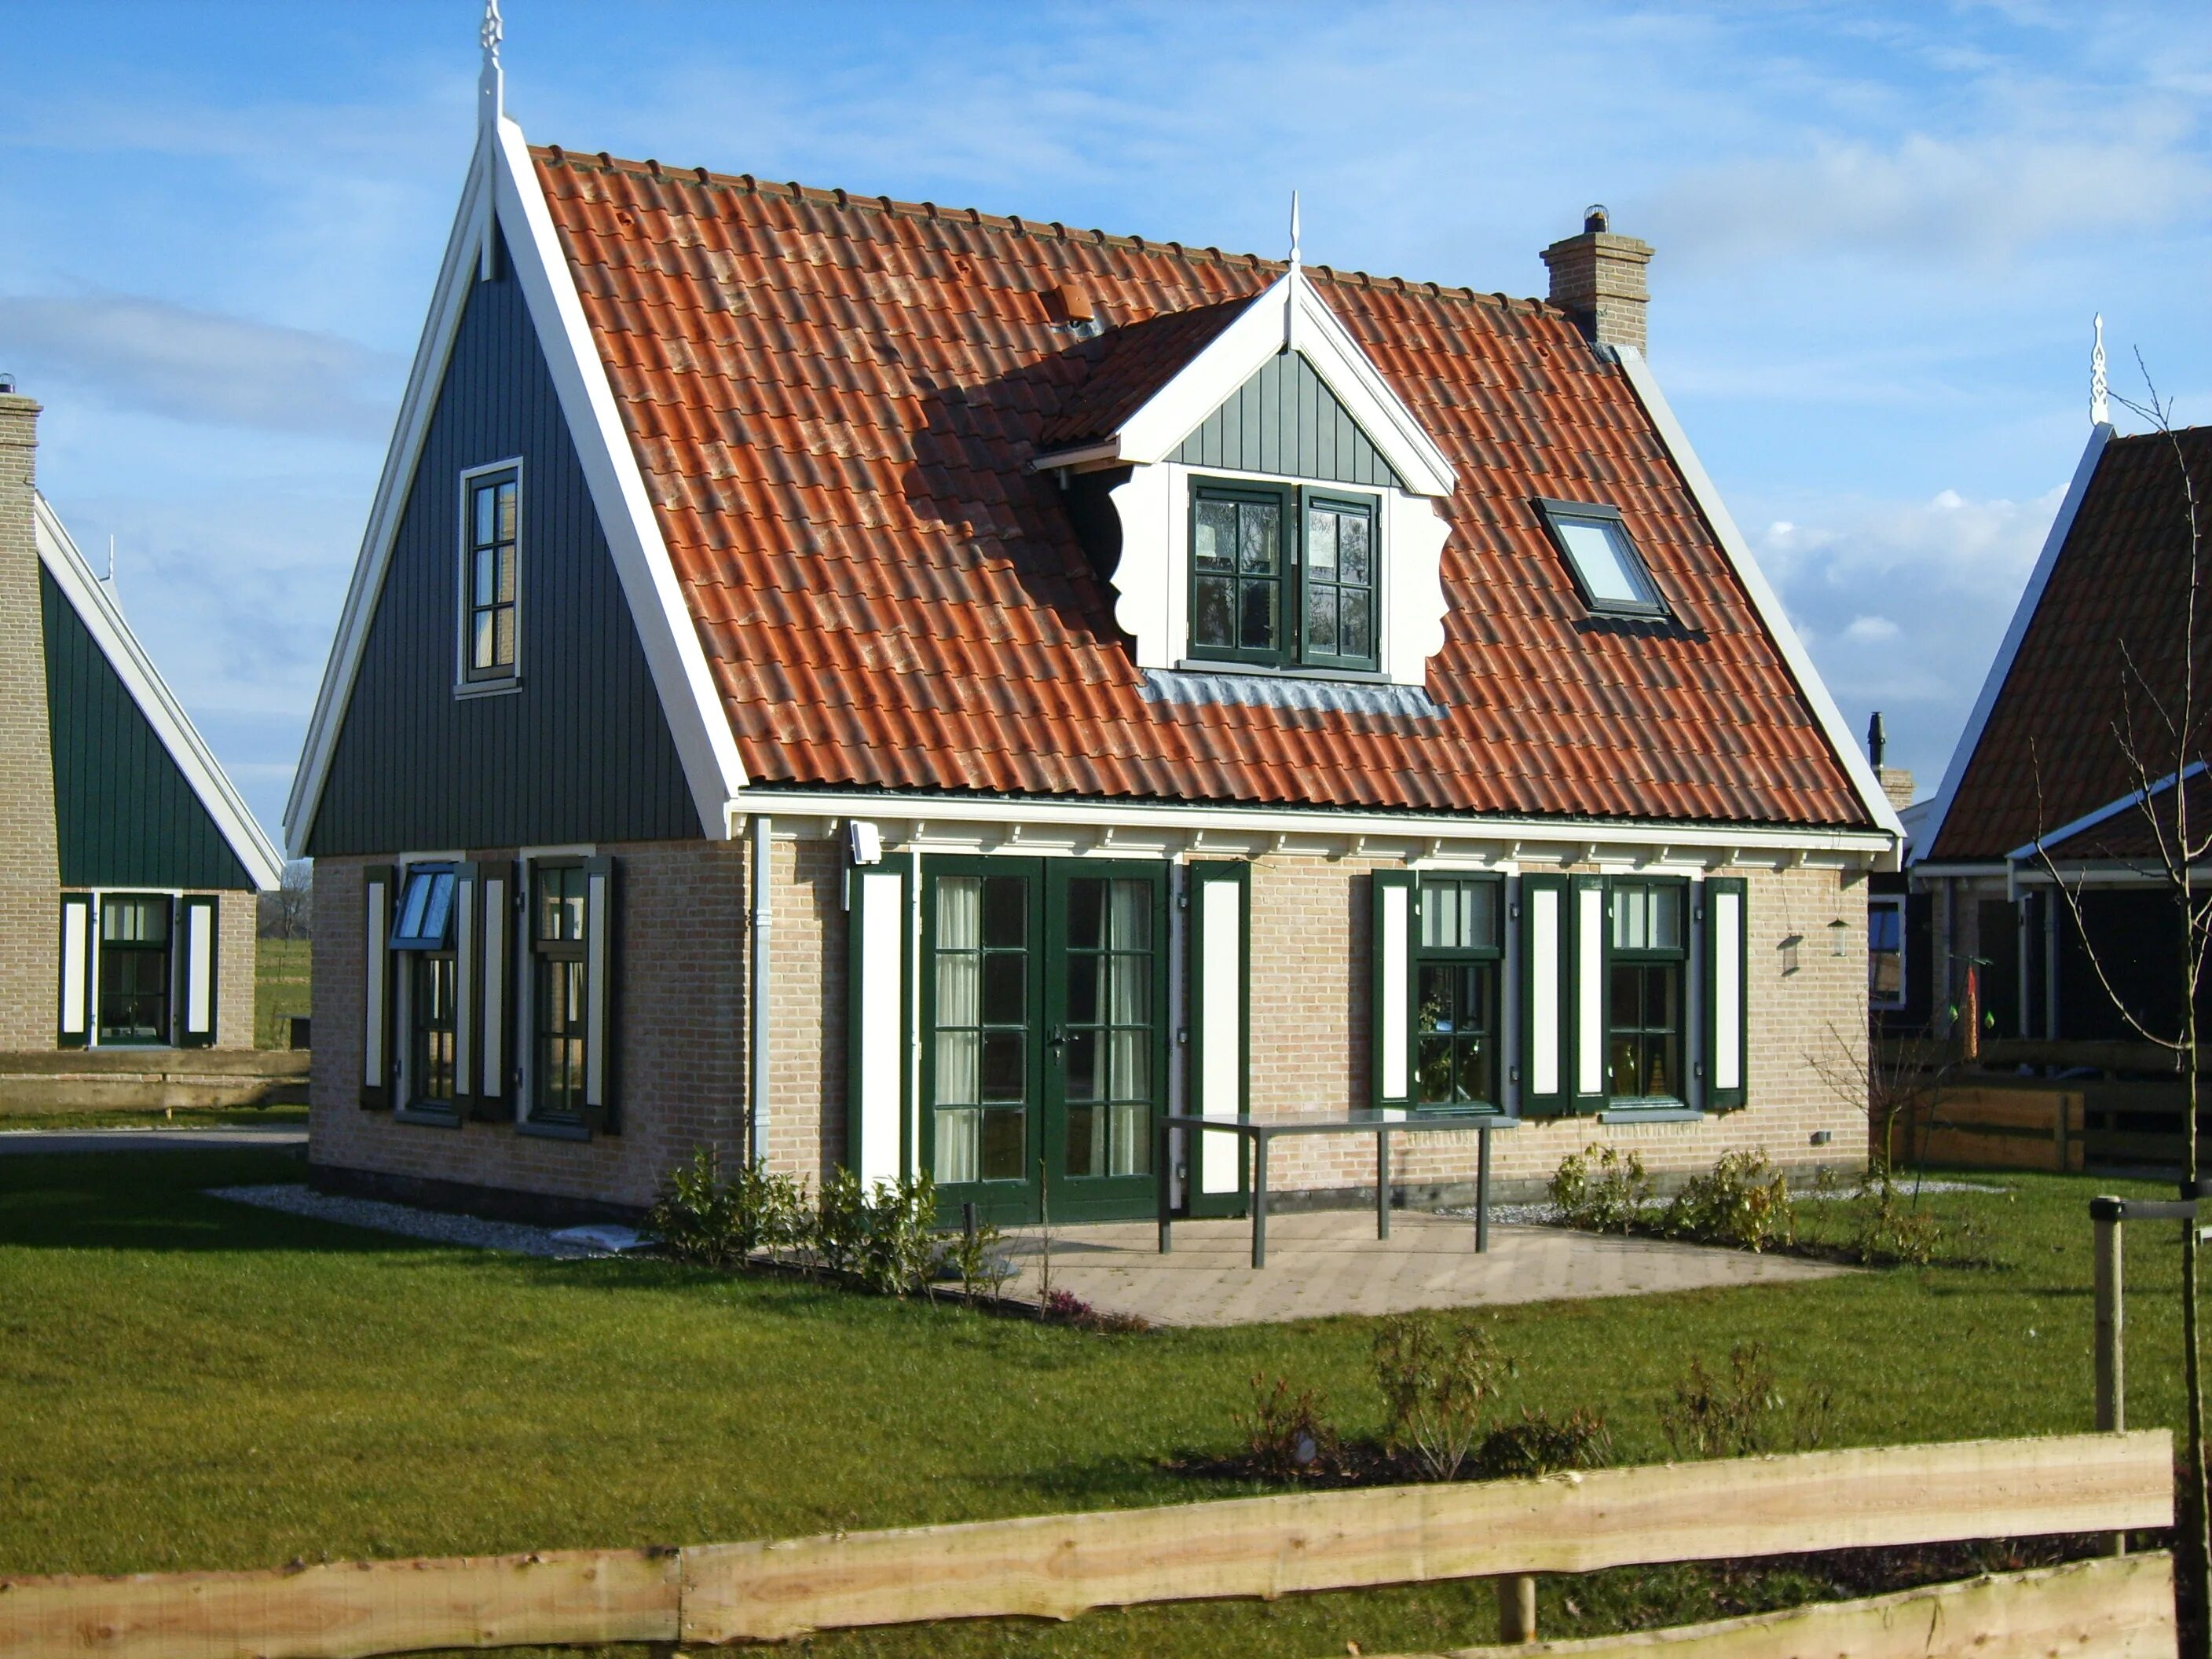 Домик в голландском стиле. Голландский стиль в архитектуре. Фасад дома в голландском стиле. Фасады голландских домов. Голландский дом отзывы